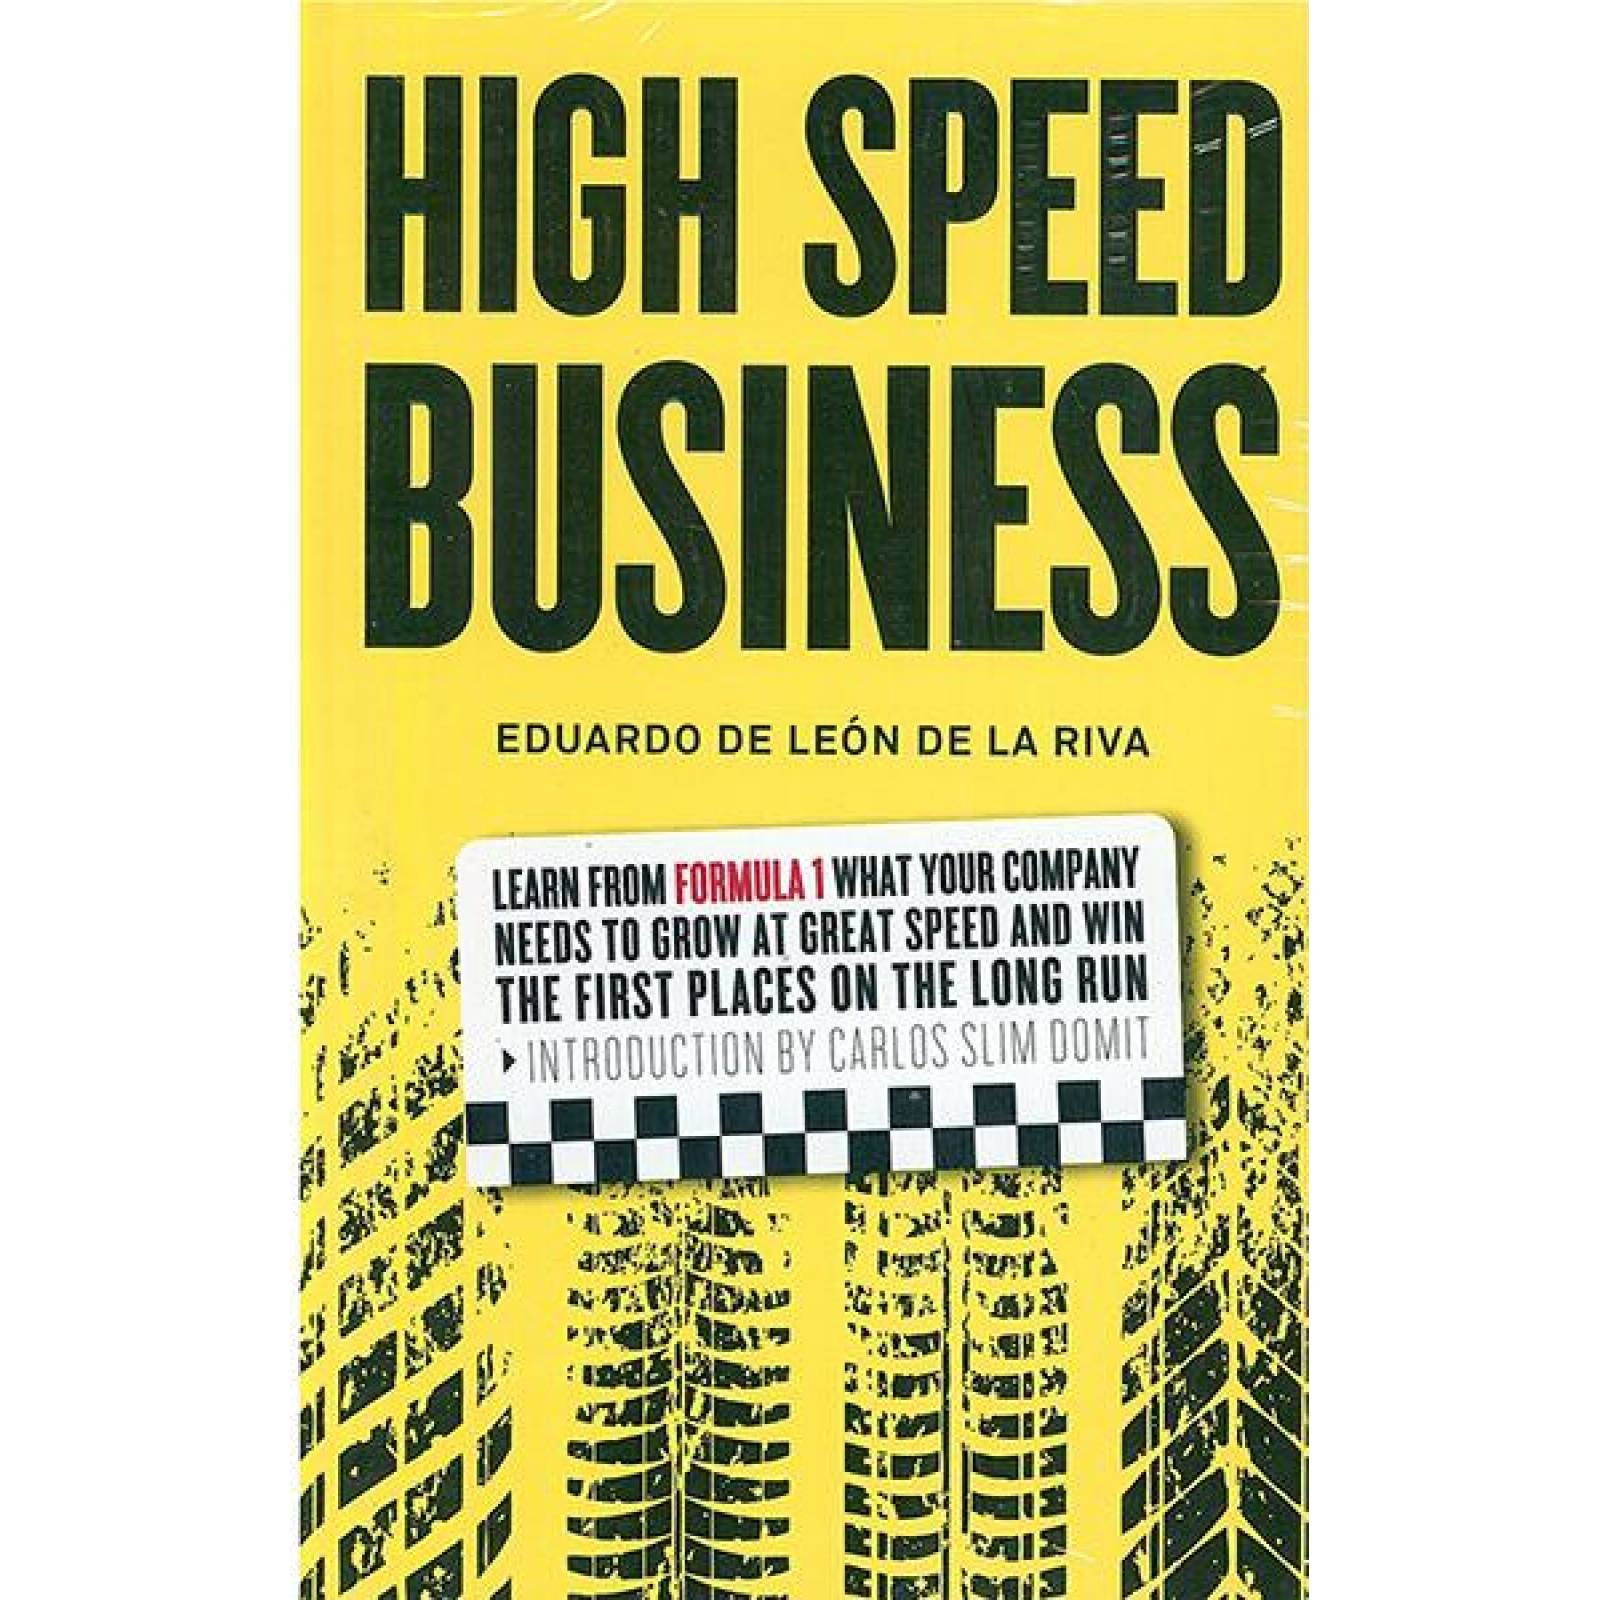 High speed business -inglés 